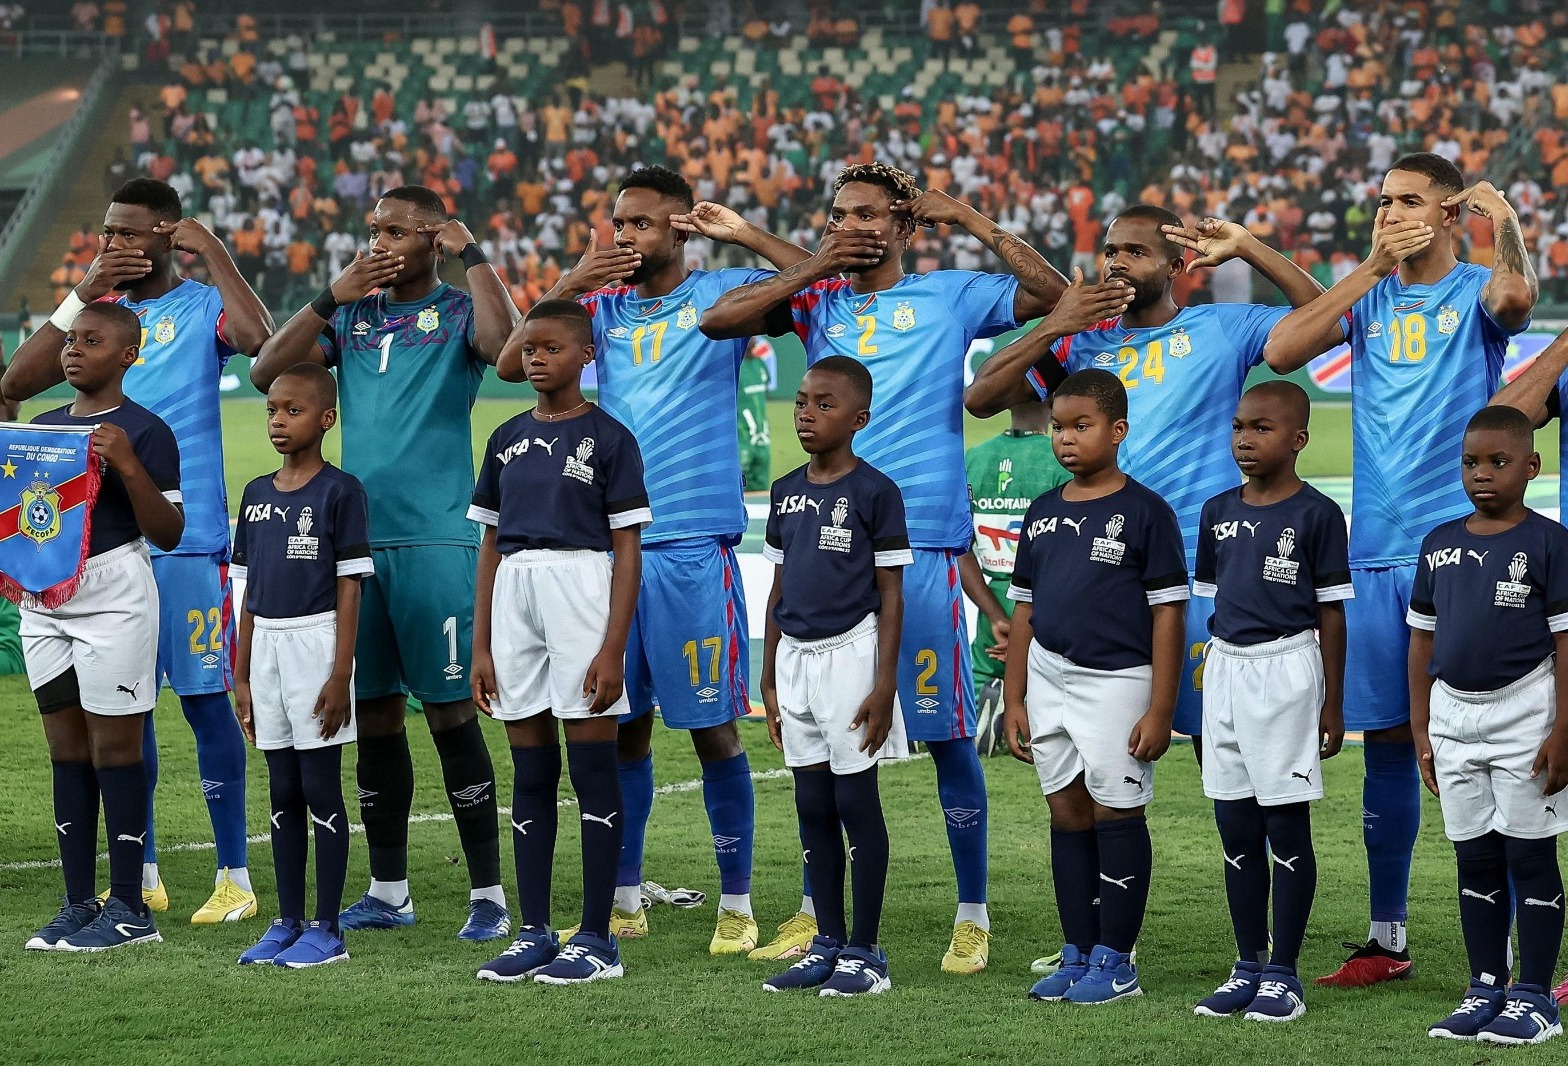 Conflit dans l’est de la RDC : Le puissant message de l’équipe de football congolaise